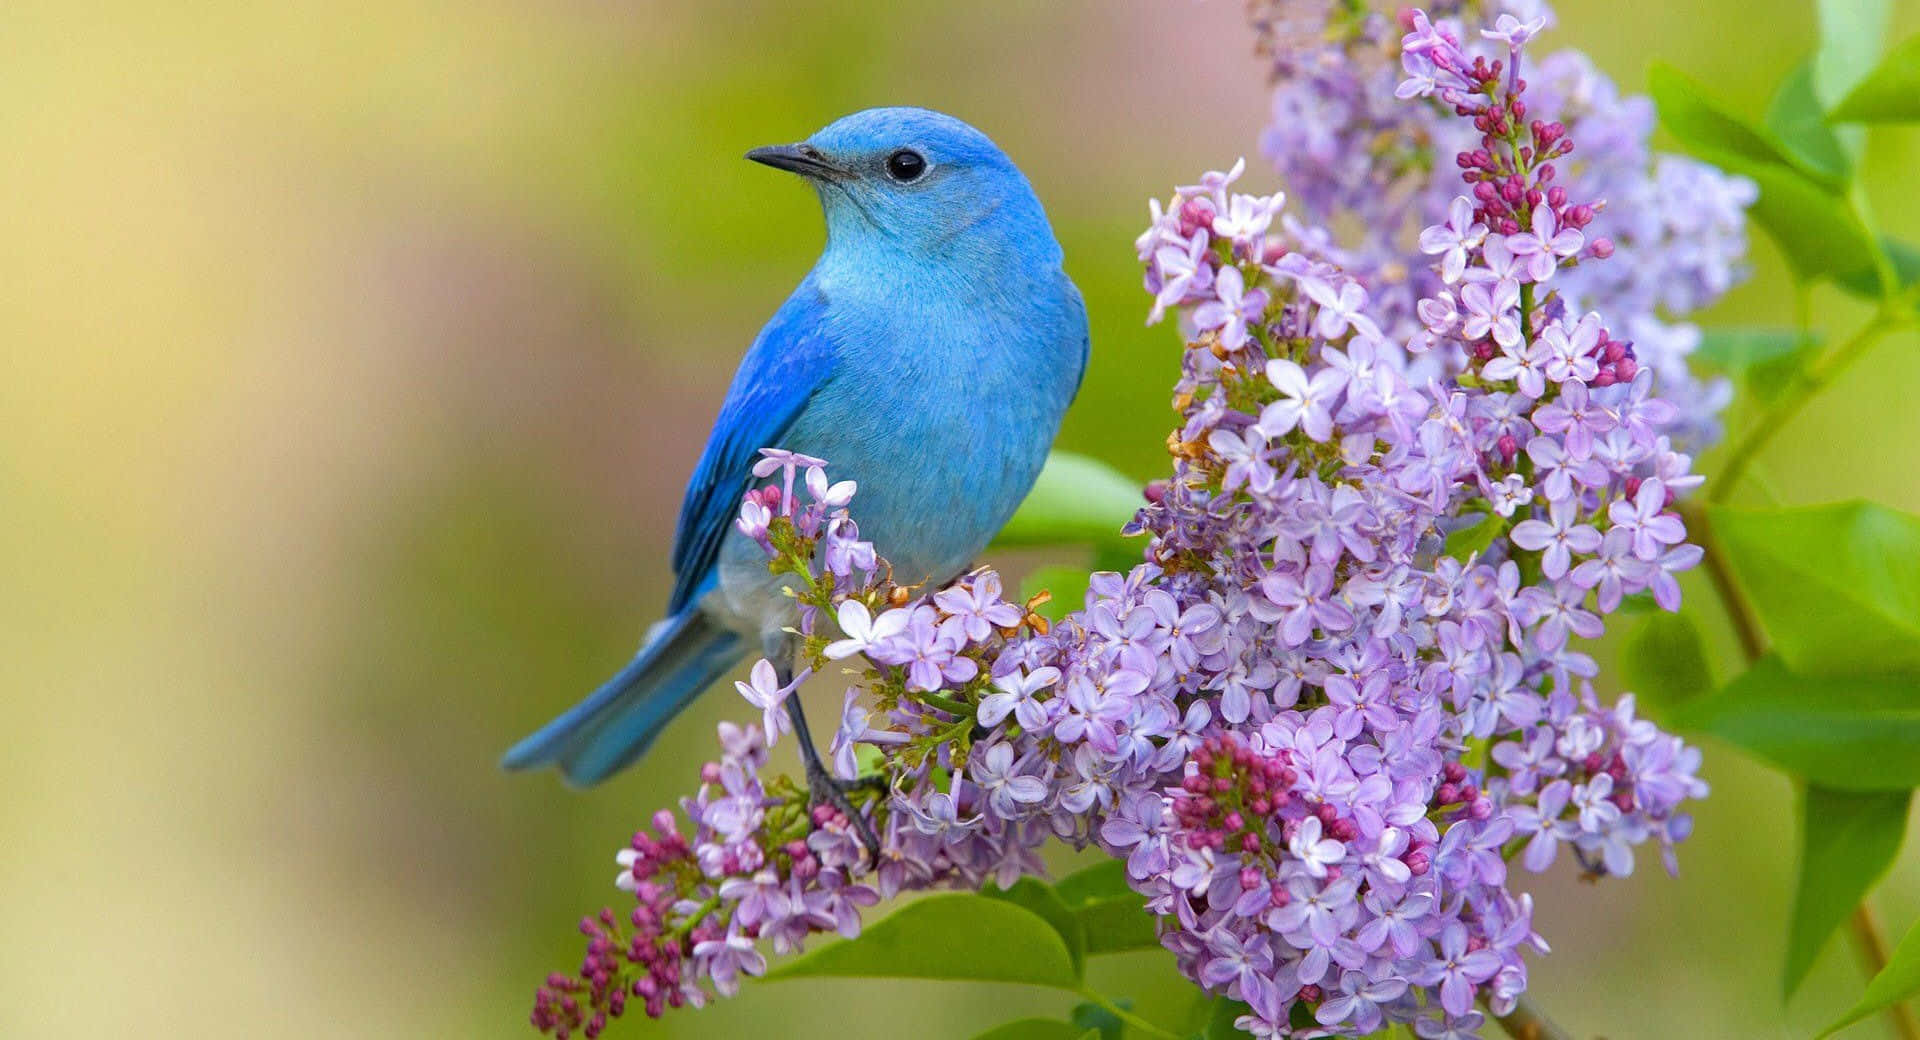 A Blue Bird Is Sitting On A Purple Flower